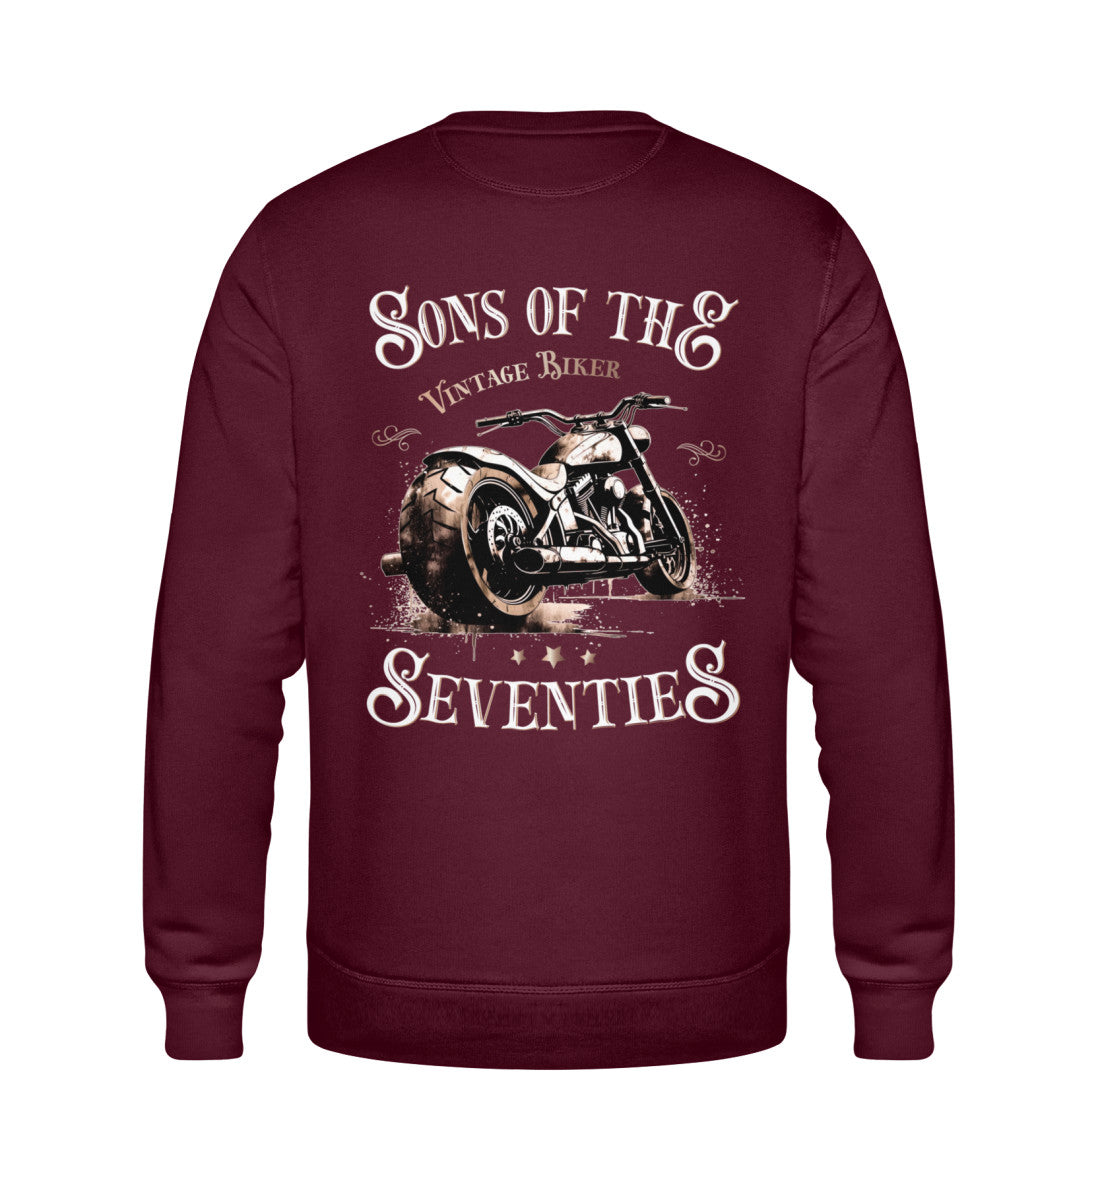 Ein Sweatshirt für Motorradfahrer von Wingbikers mit dem Aufdruck, Sons of the Seventies - Vintage Biker, als Back Print, in burgunder weinrot.